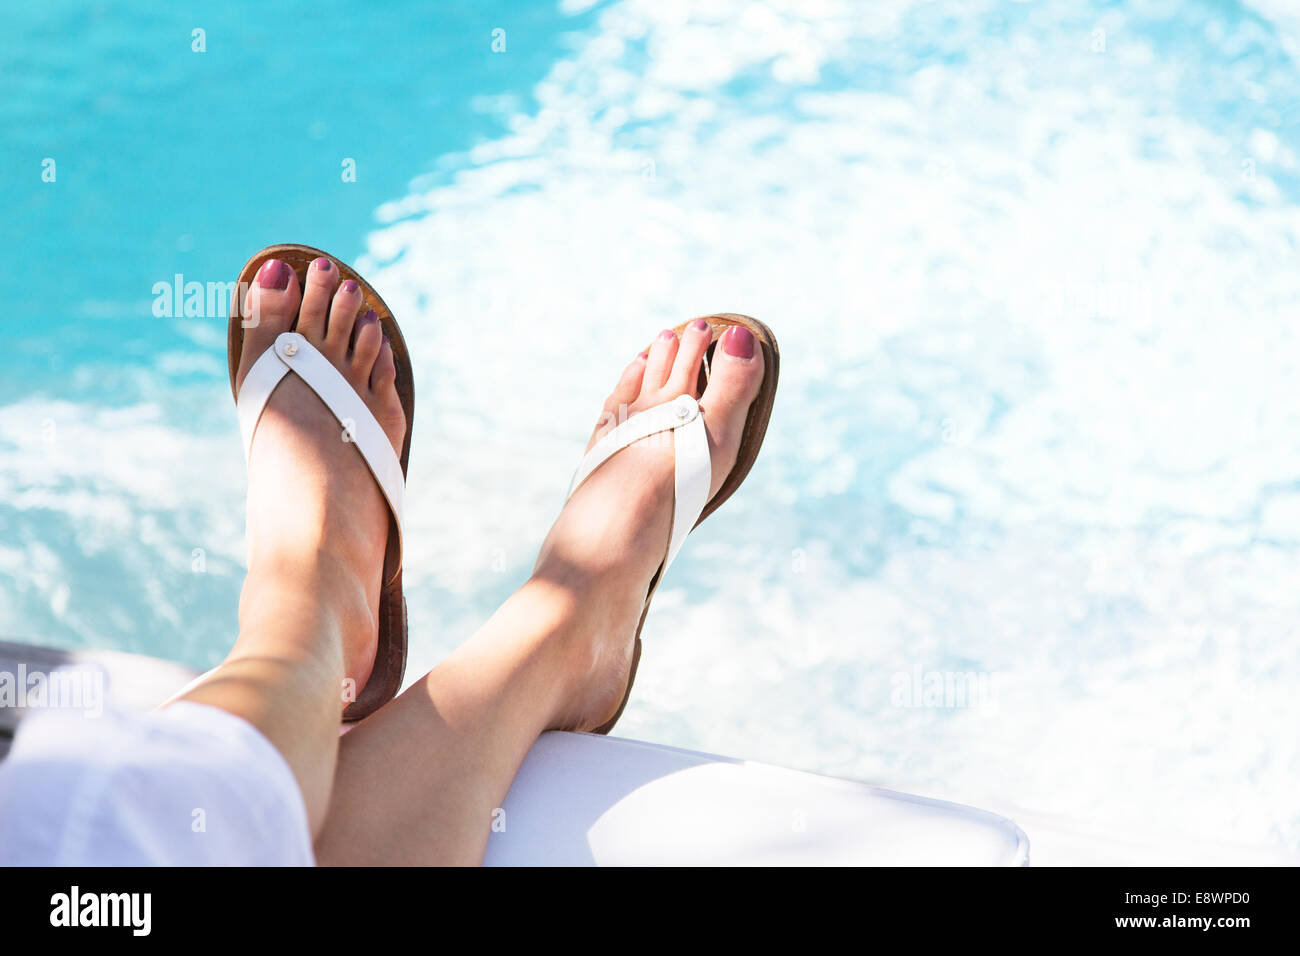 Close up of woman's pieds ballants sur piscine Banque D'Images